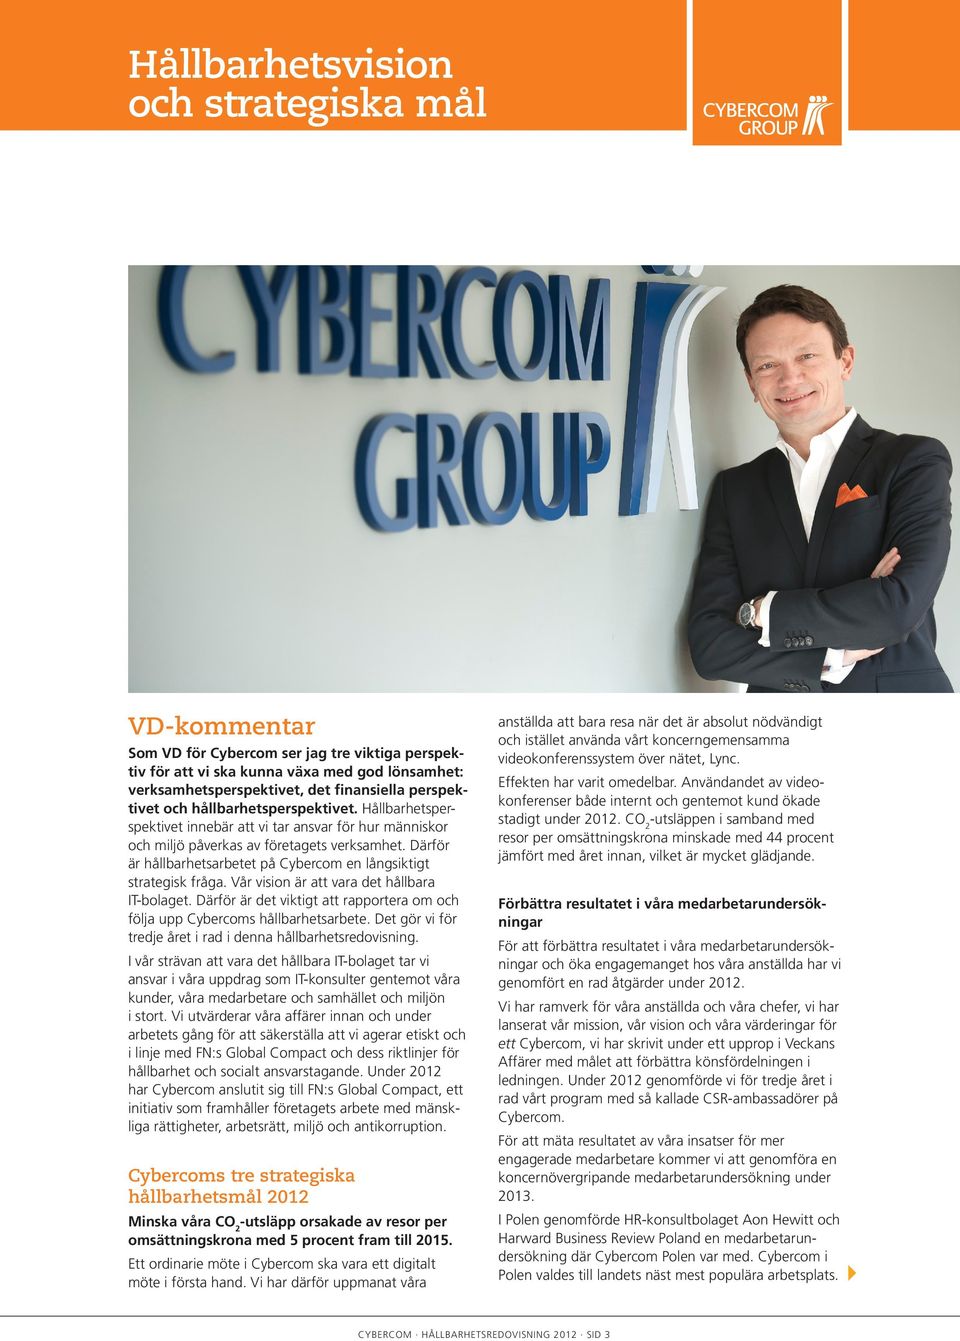 Därför är hållbarhetsarbetet på Cybercom en långsiktigt strategisk fråga. Vår vision är att vara det hållbara IT-bolaget.